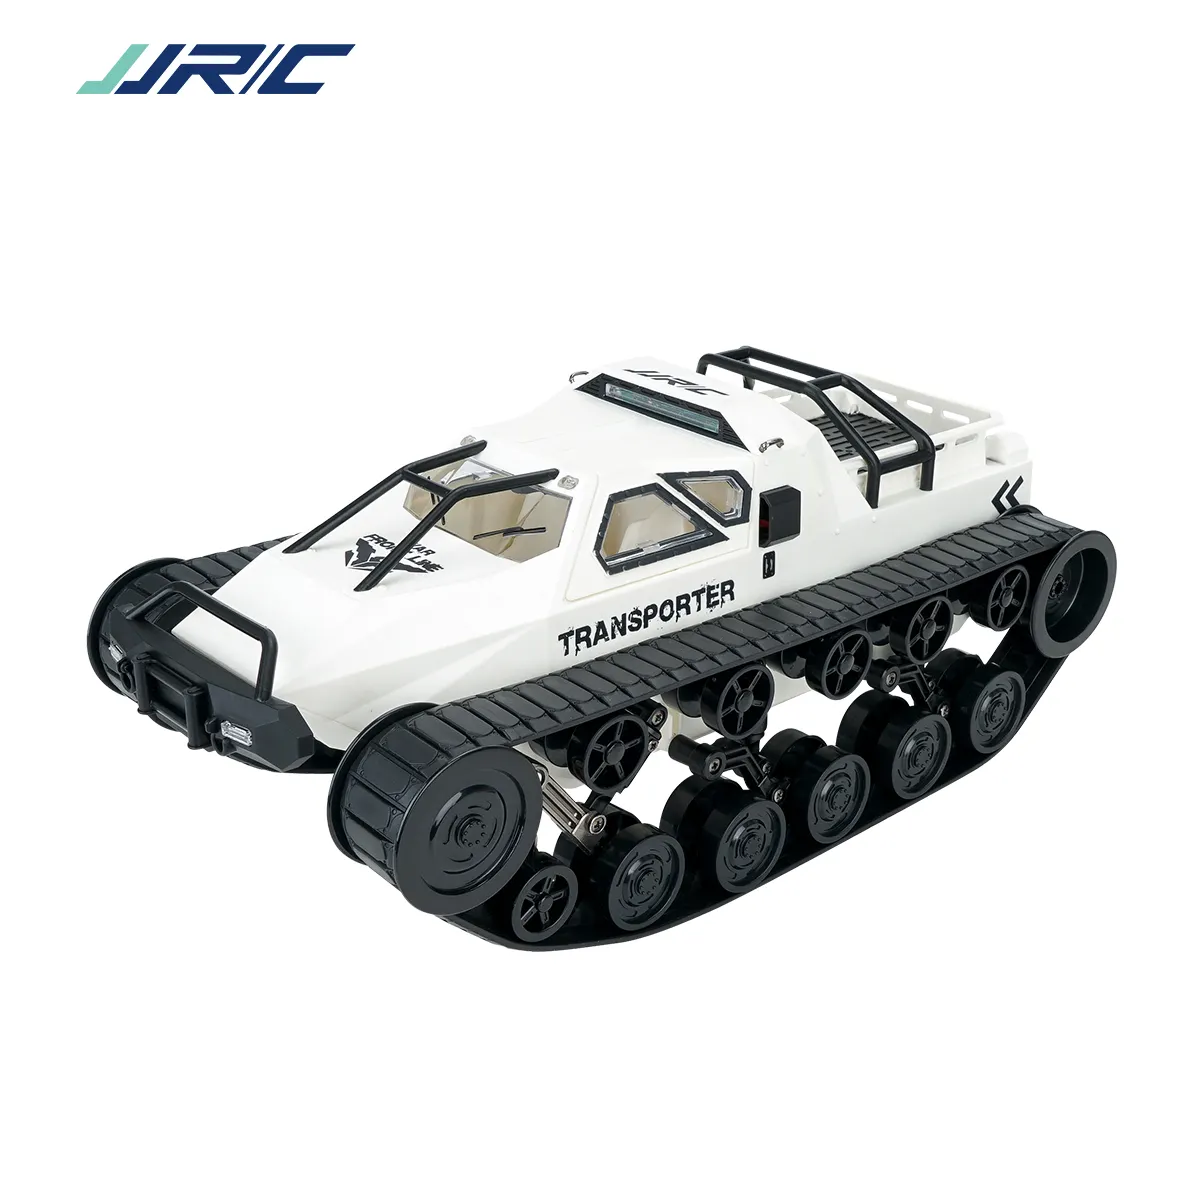 JJRC Q79 échelle 1:12 2.4GHz RC réservoirs jouet véhicule rotatif télécommande voiture piste réglable rc voiture jouet pour enfants